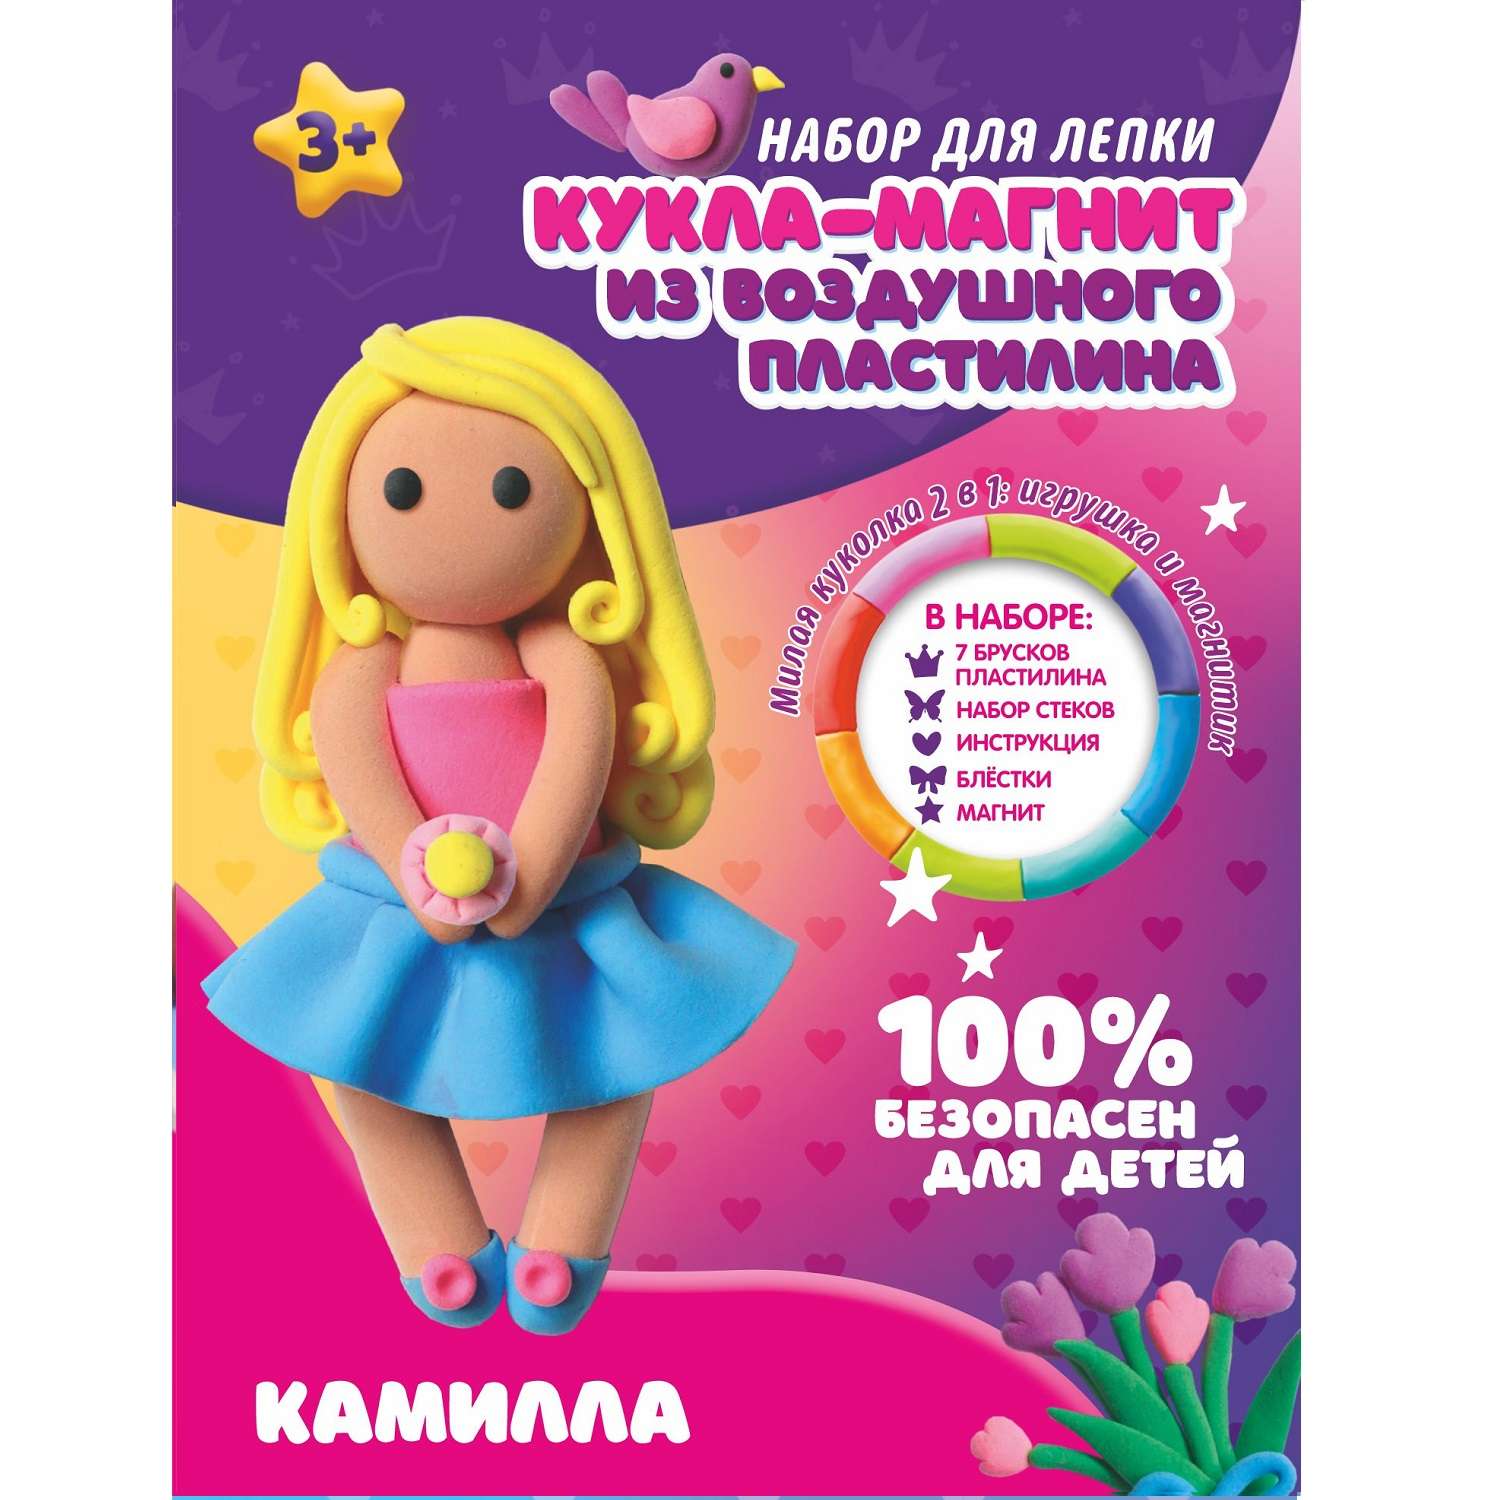 Купить настольные игры на русском языке – магазин natali-fashion.ru